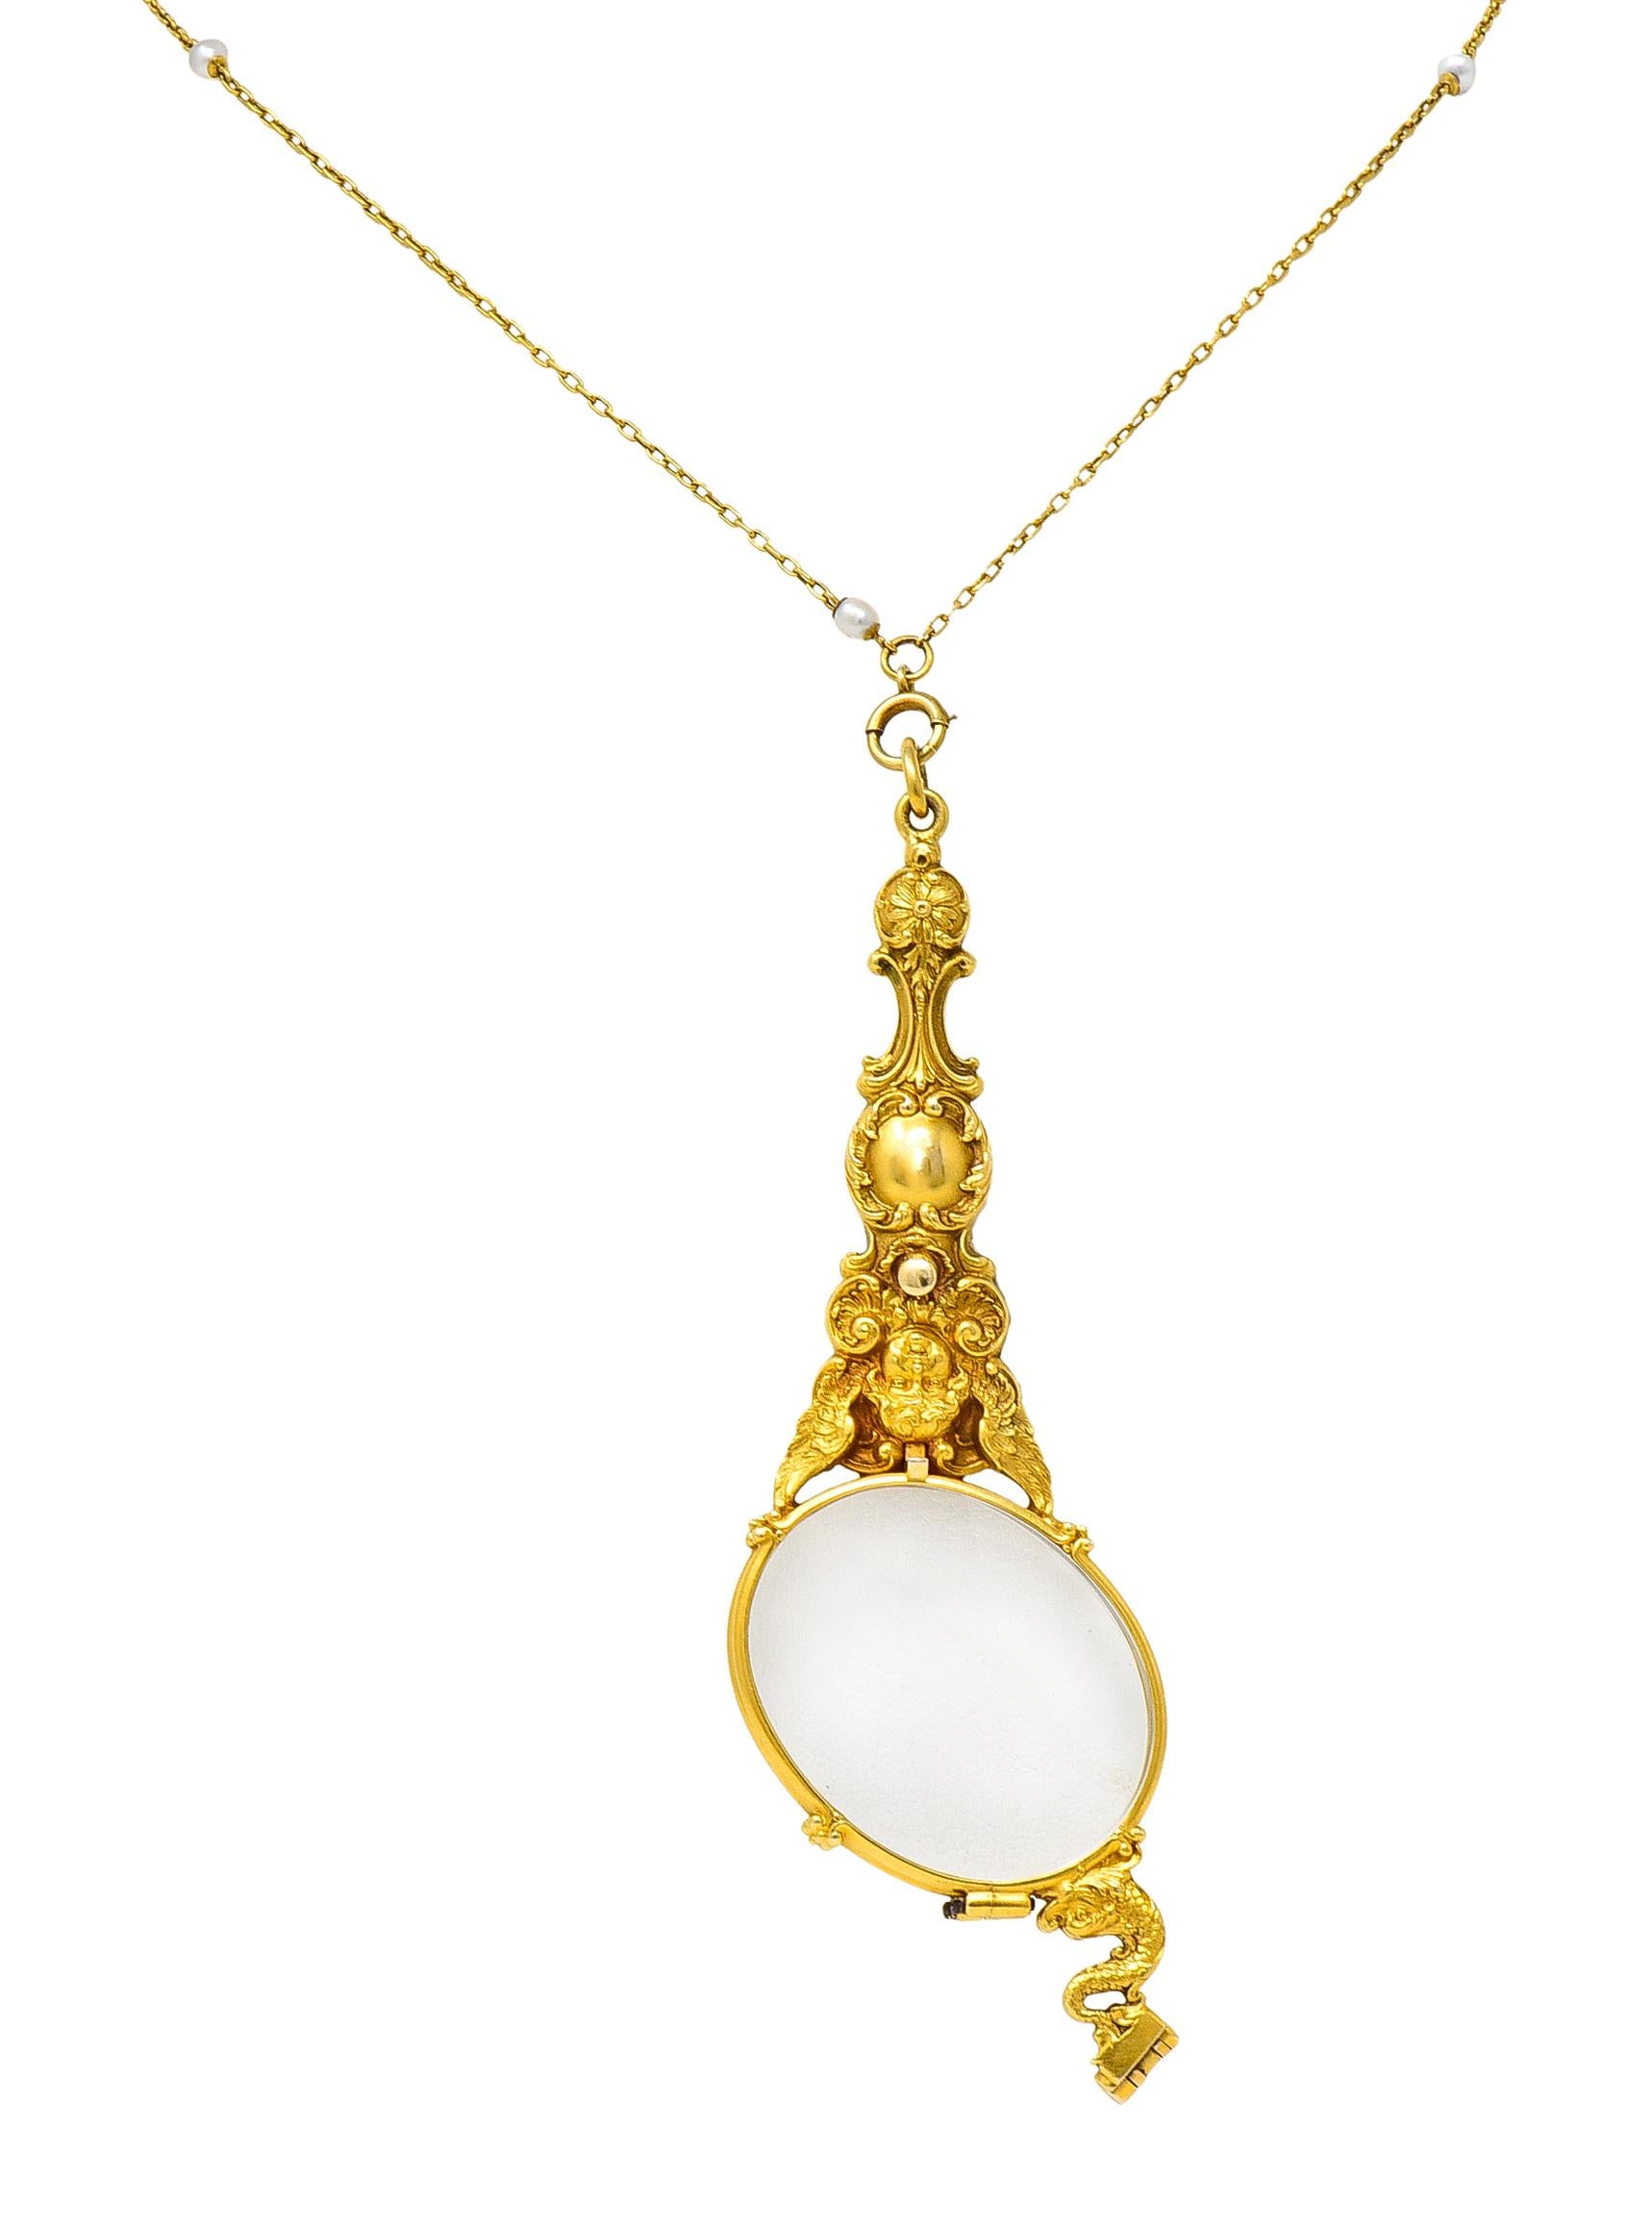 Women's or Men's Art Nouveau Pearl 18 Karat Yellow Gold Lorgnette Glasses Station Necklace